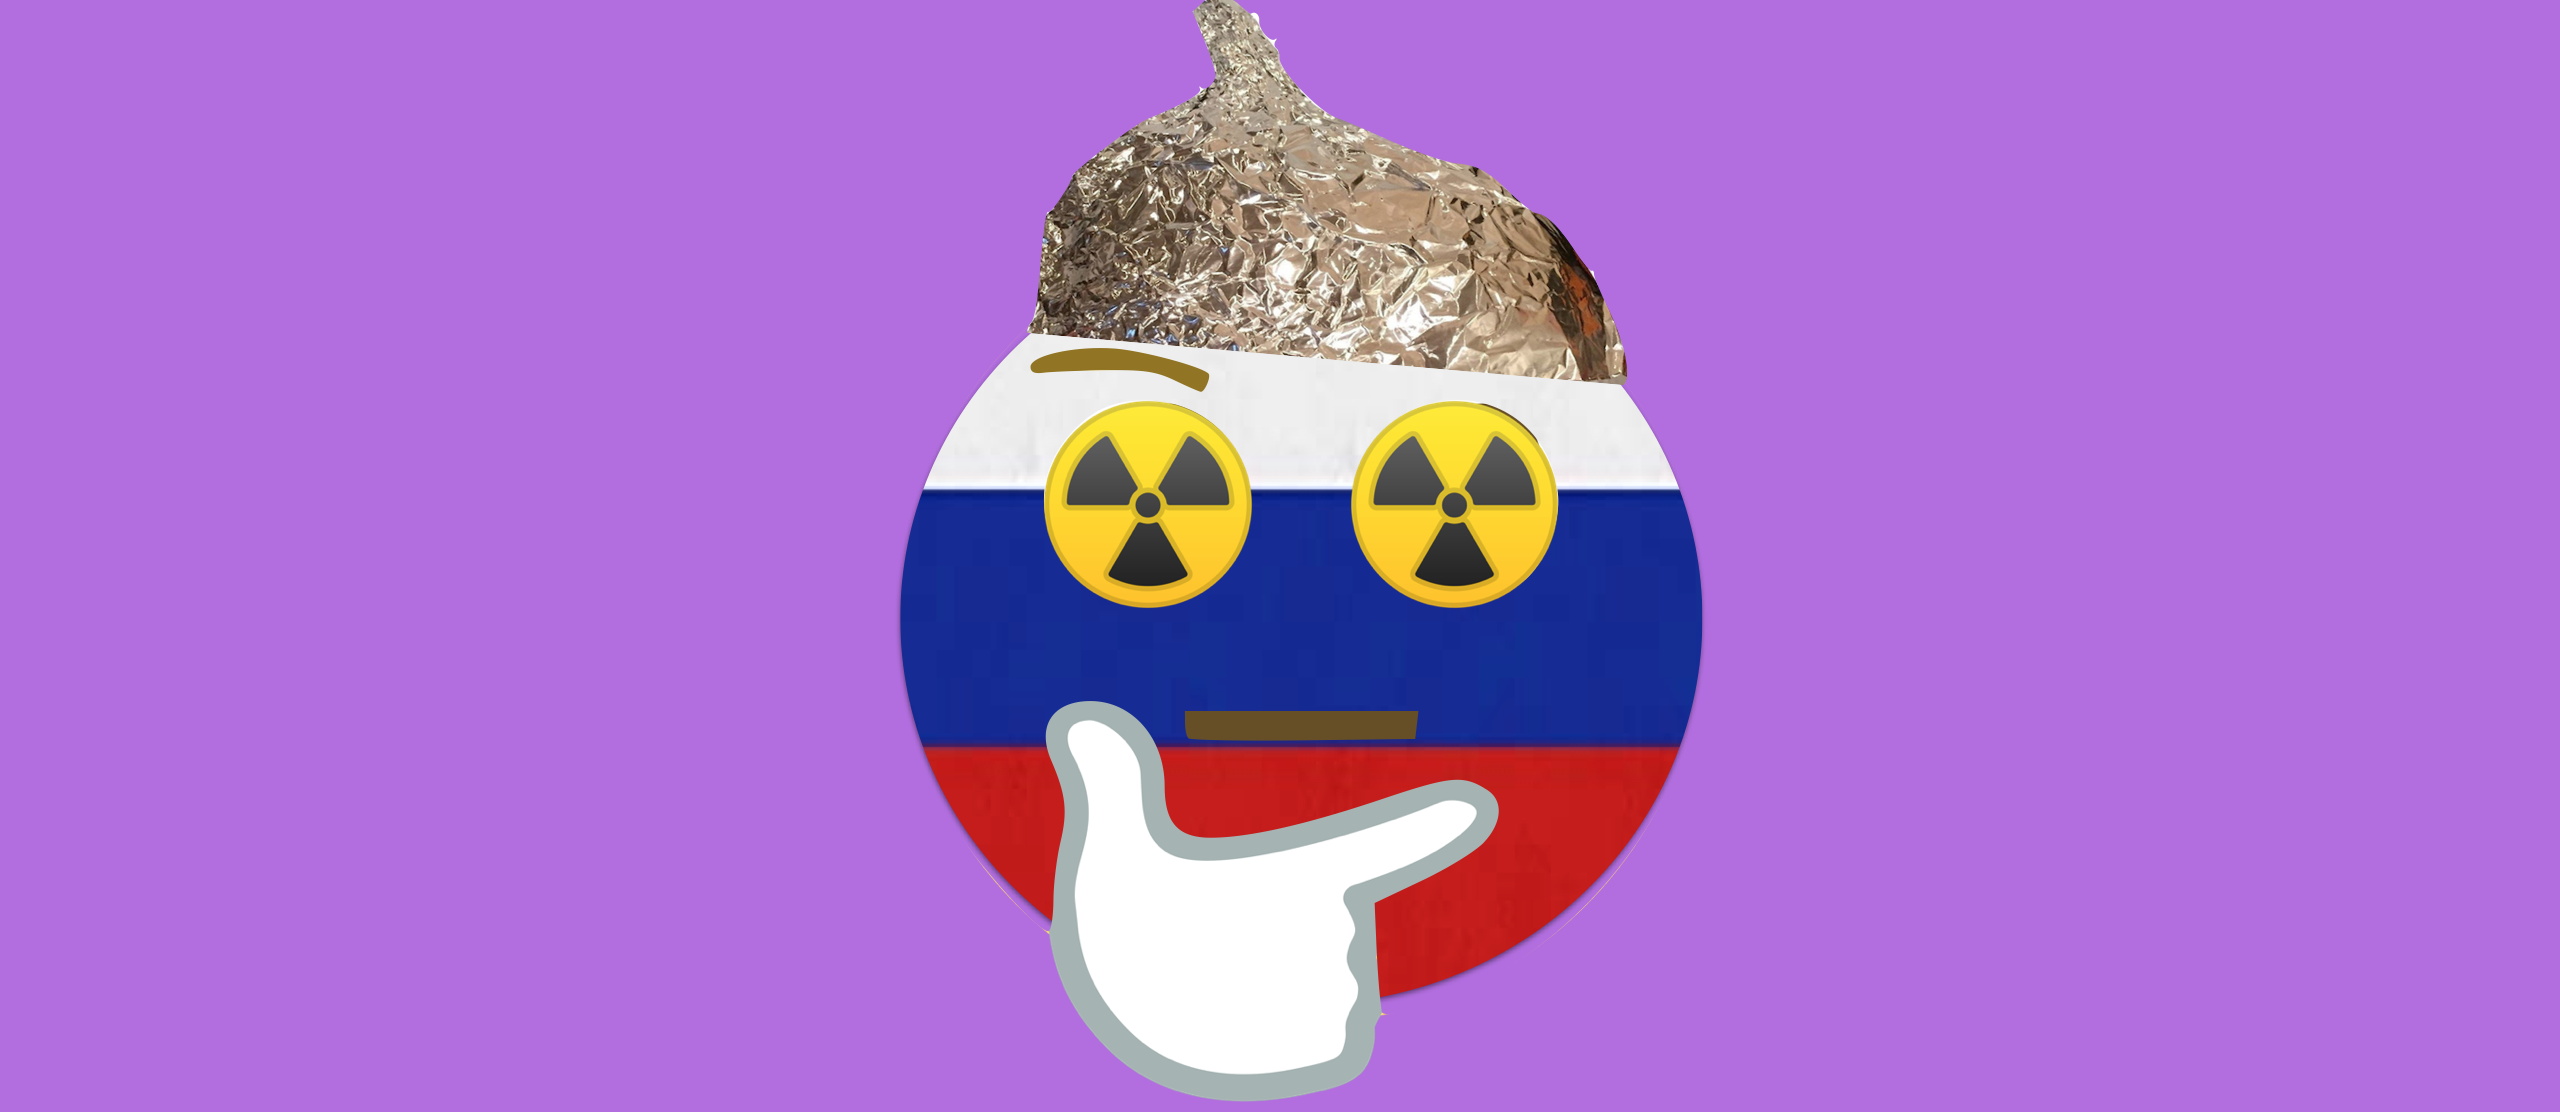 #PutinAtWar: Russian Diplomacy Mixed with Conspiracy on Skripal